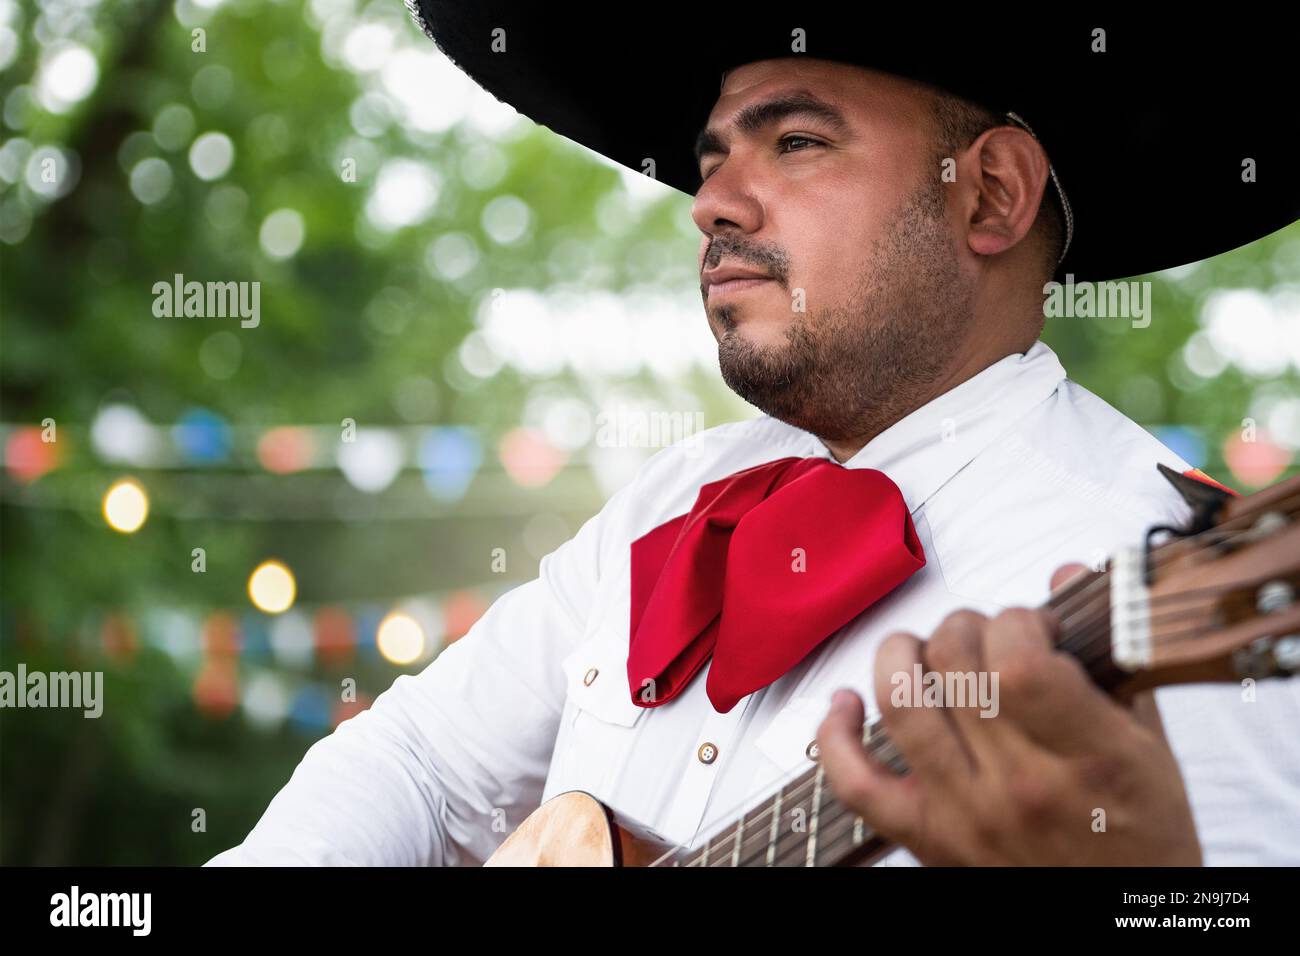 Musicien mexicain mariachi avec guitare sur fond flou de fête Banque D'Images